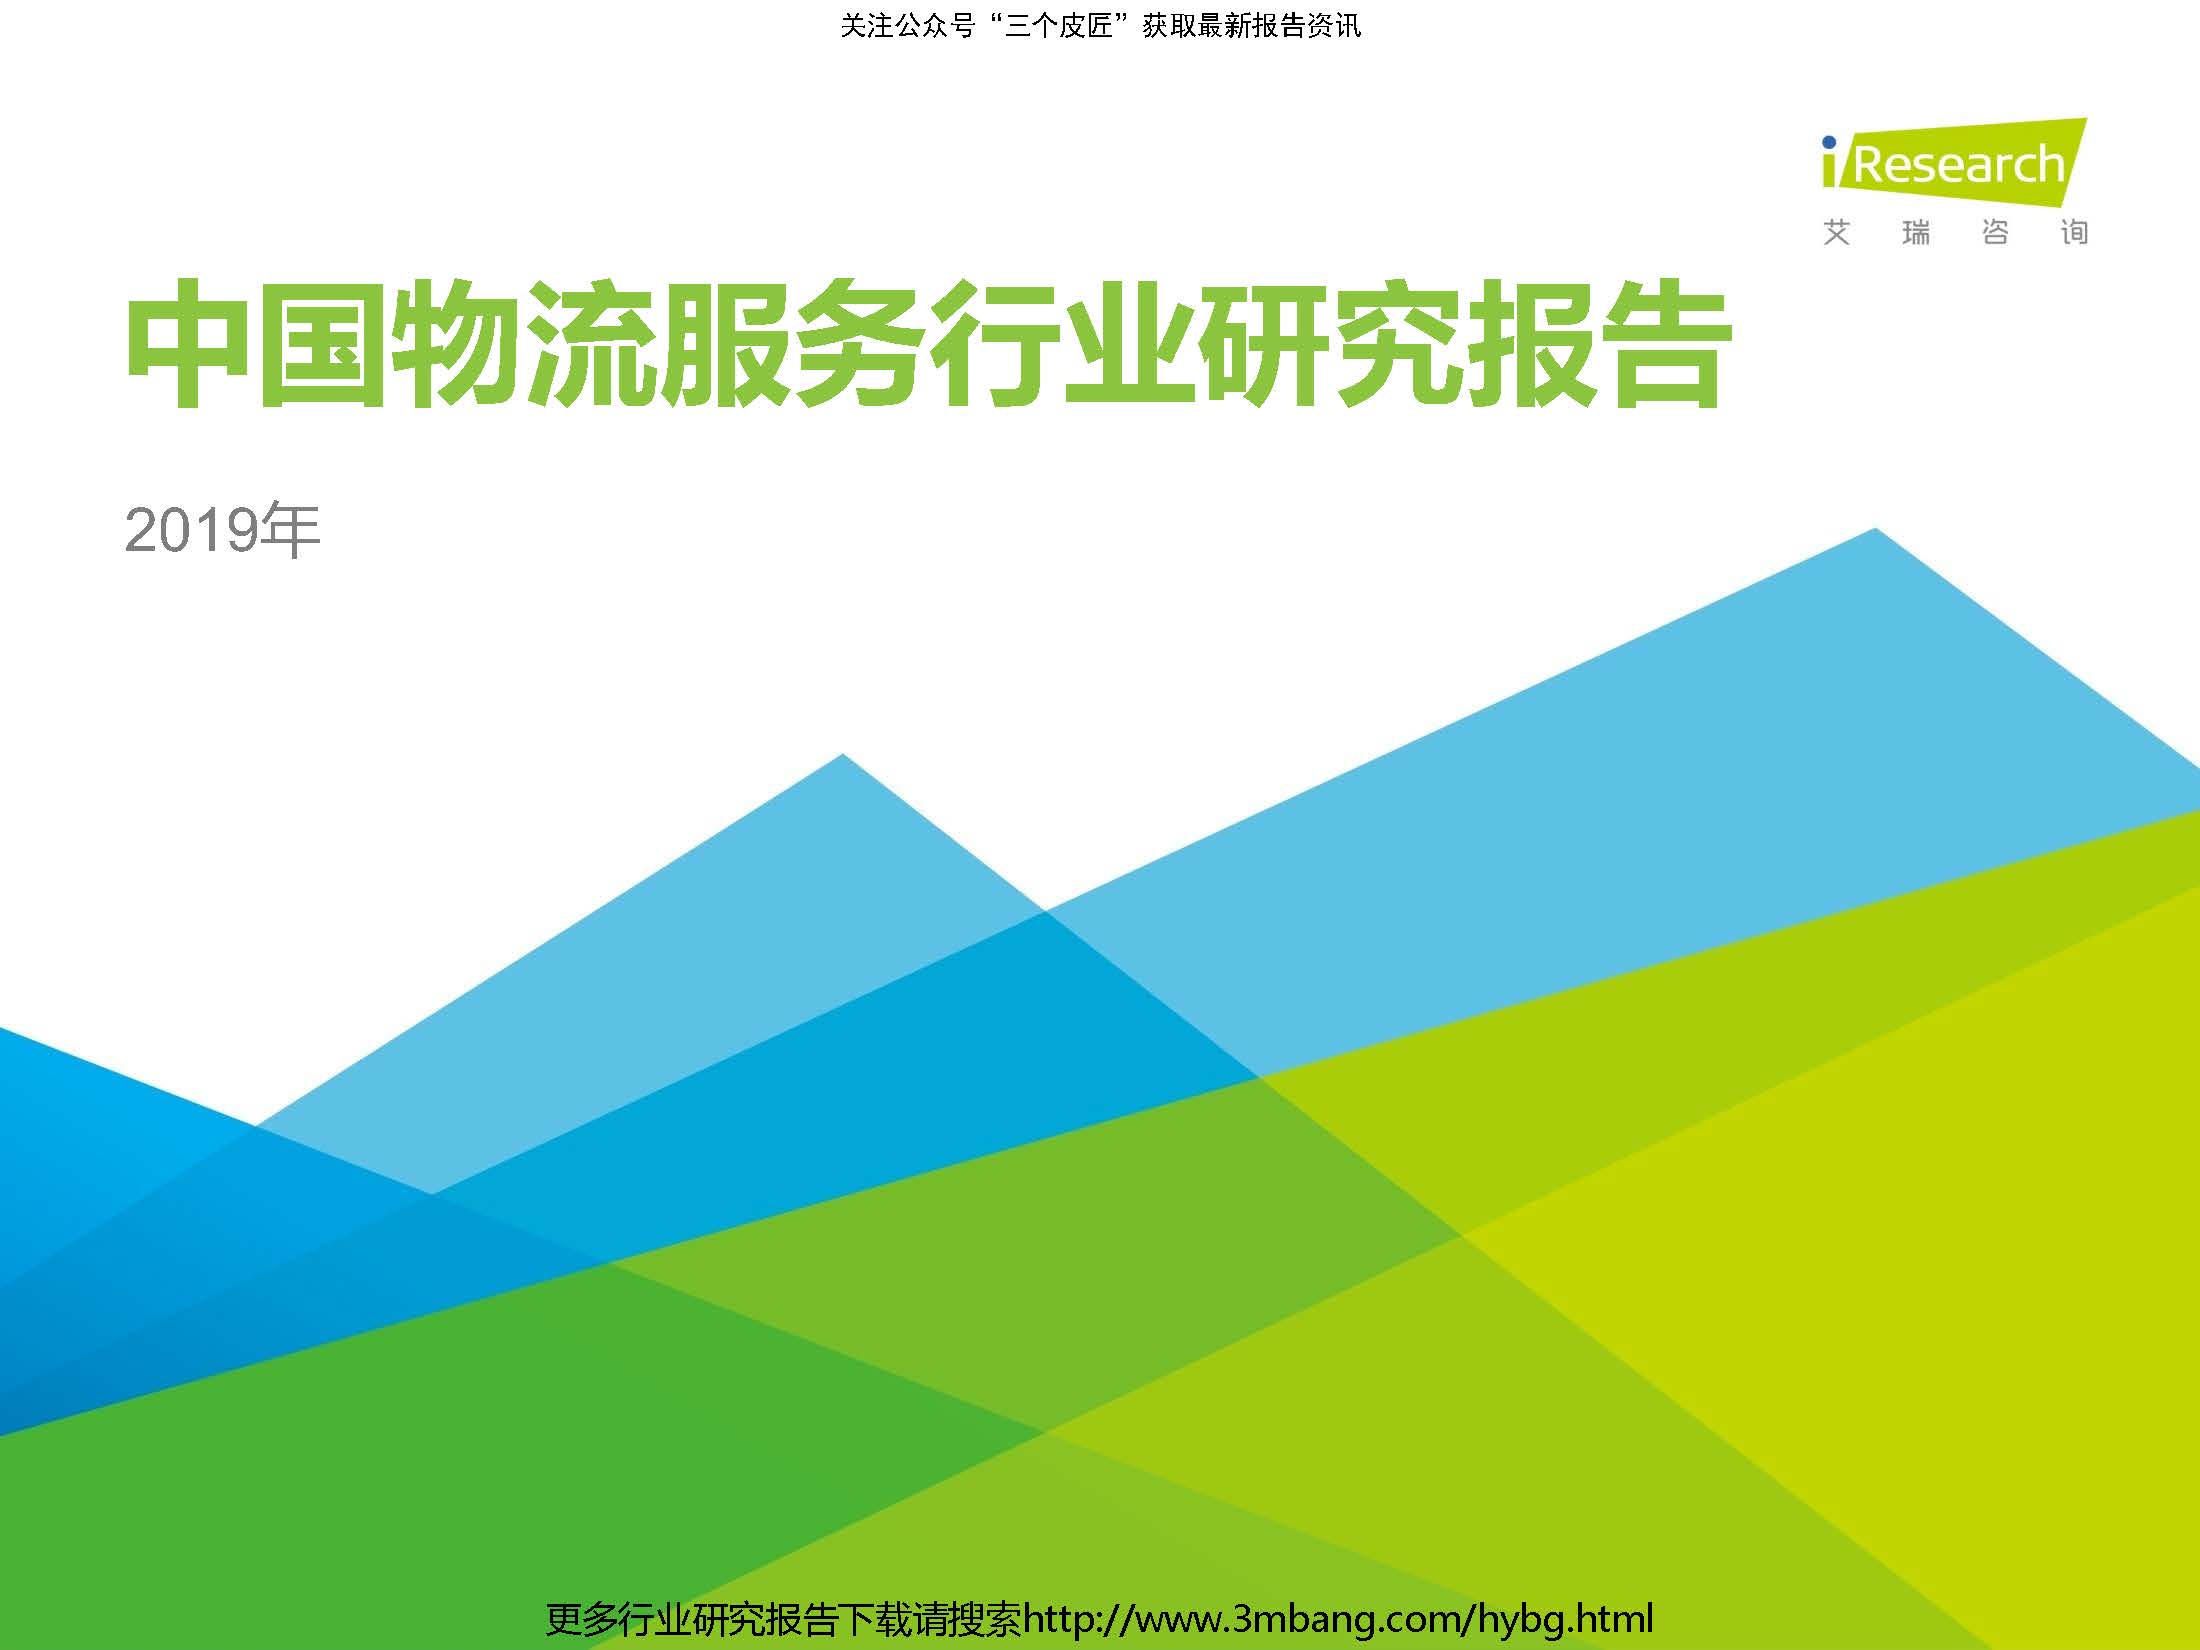 艾瑞：2019年中国物流服务行业研究报告（附下载地址）